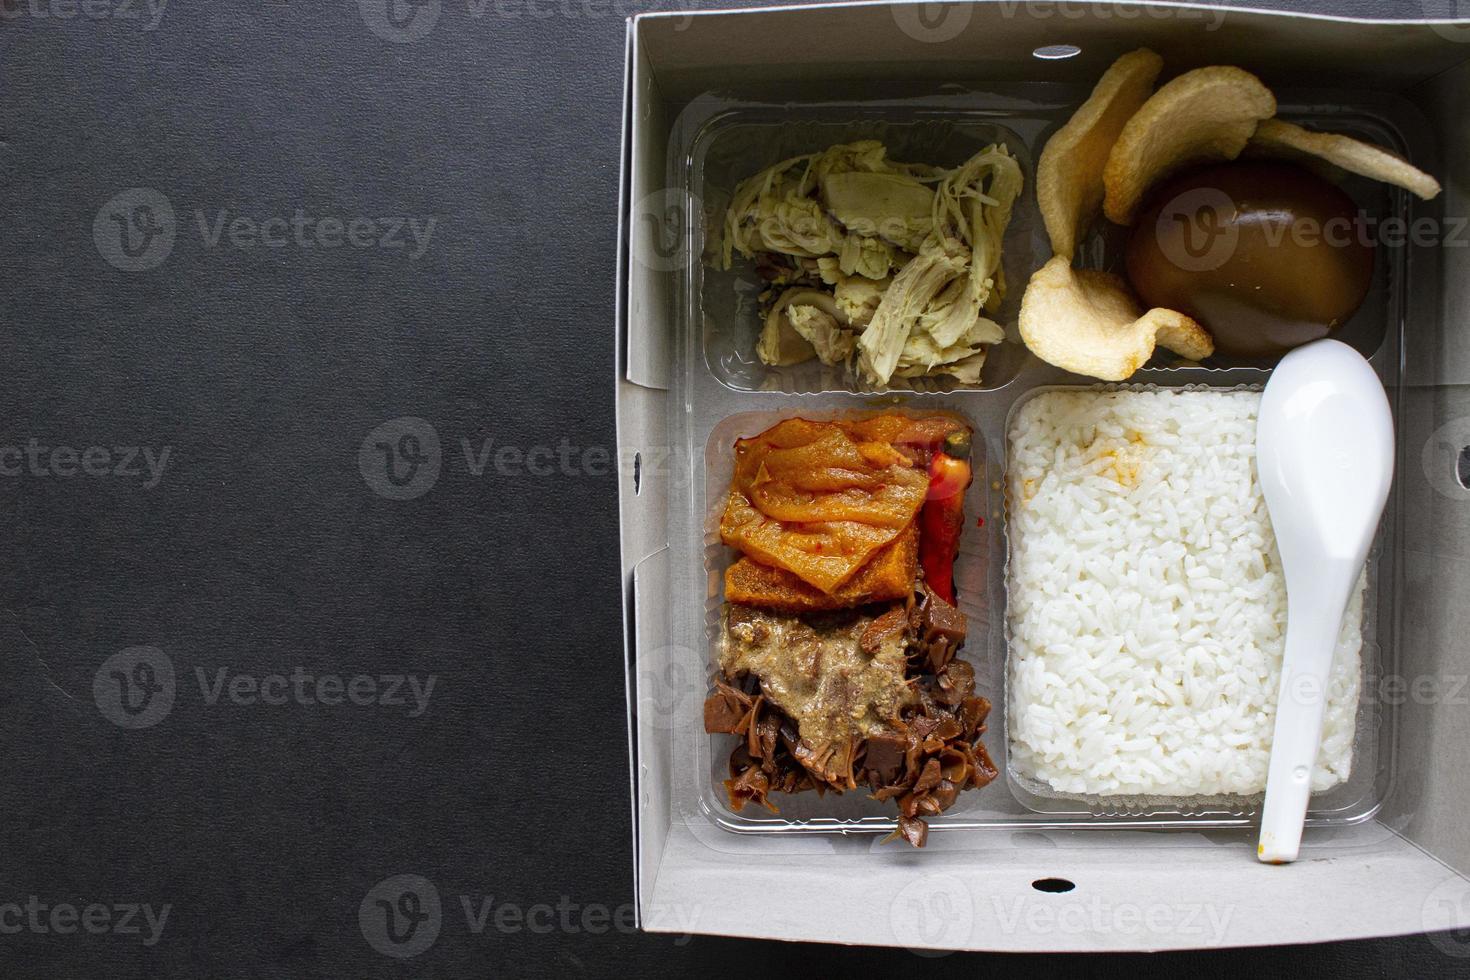 Las loncheras gudeg son similares a las cajas bento: cajas de arroz, arroz, cajas de catering, servicios de alimentos, arroz tibio, huevos dulces, krecek, tofu, tempeh, trozos de pollo, foto